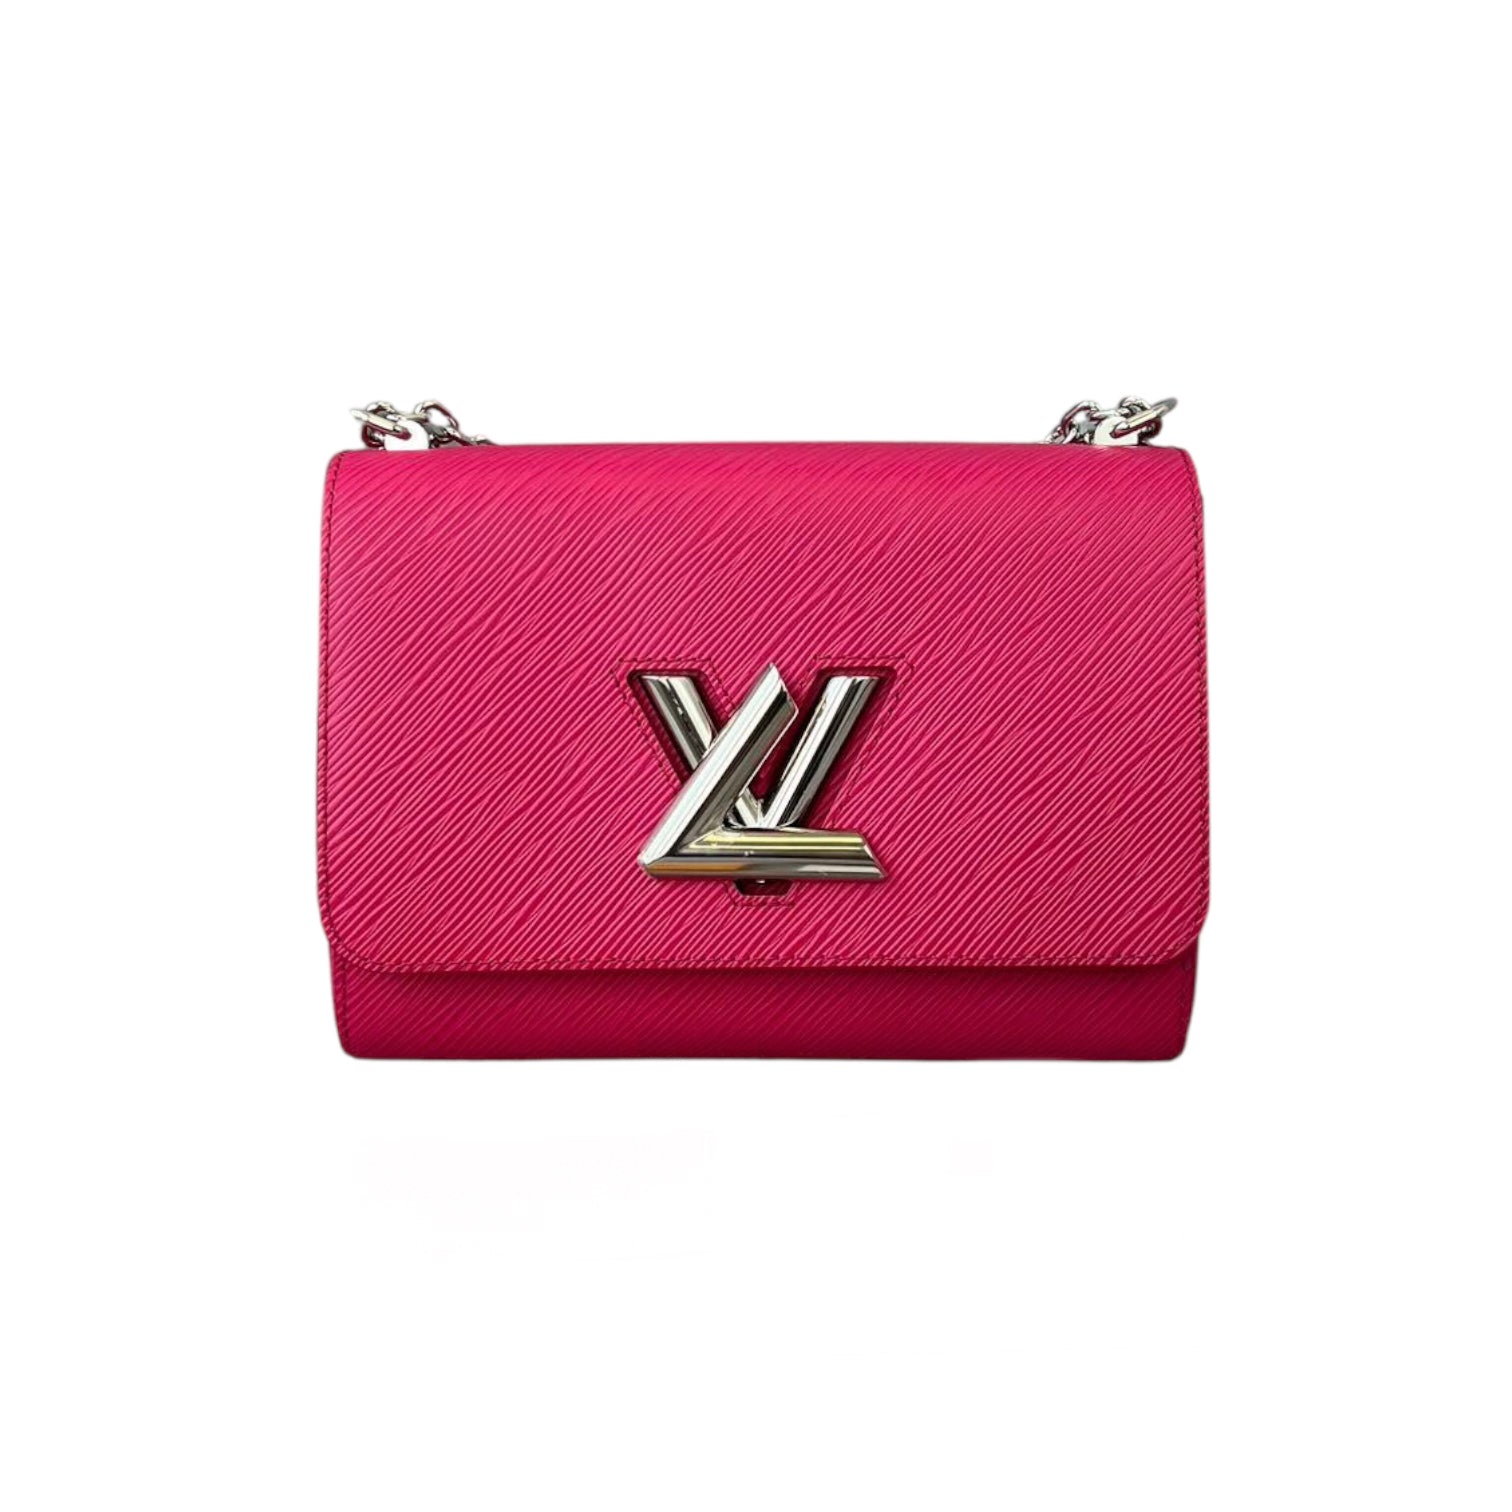 SOLD! Louis Vuitton epi Sarah wallet in Jaune